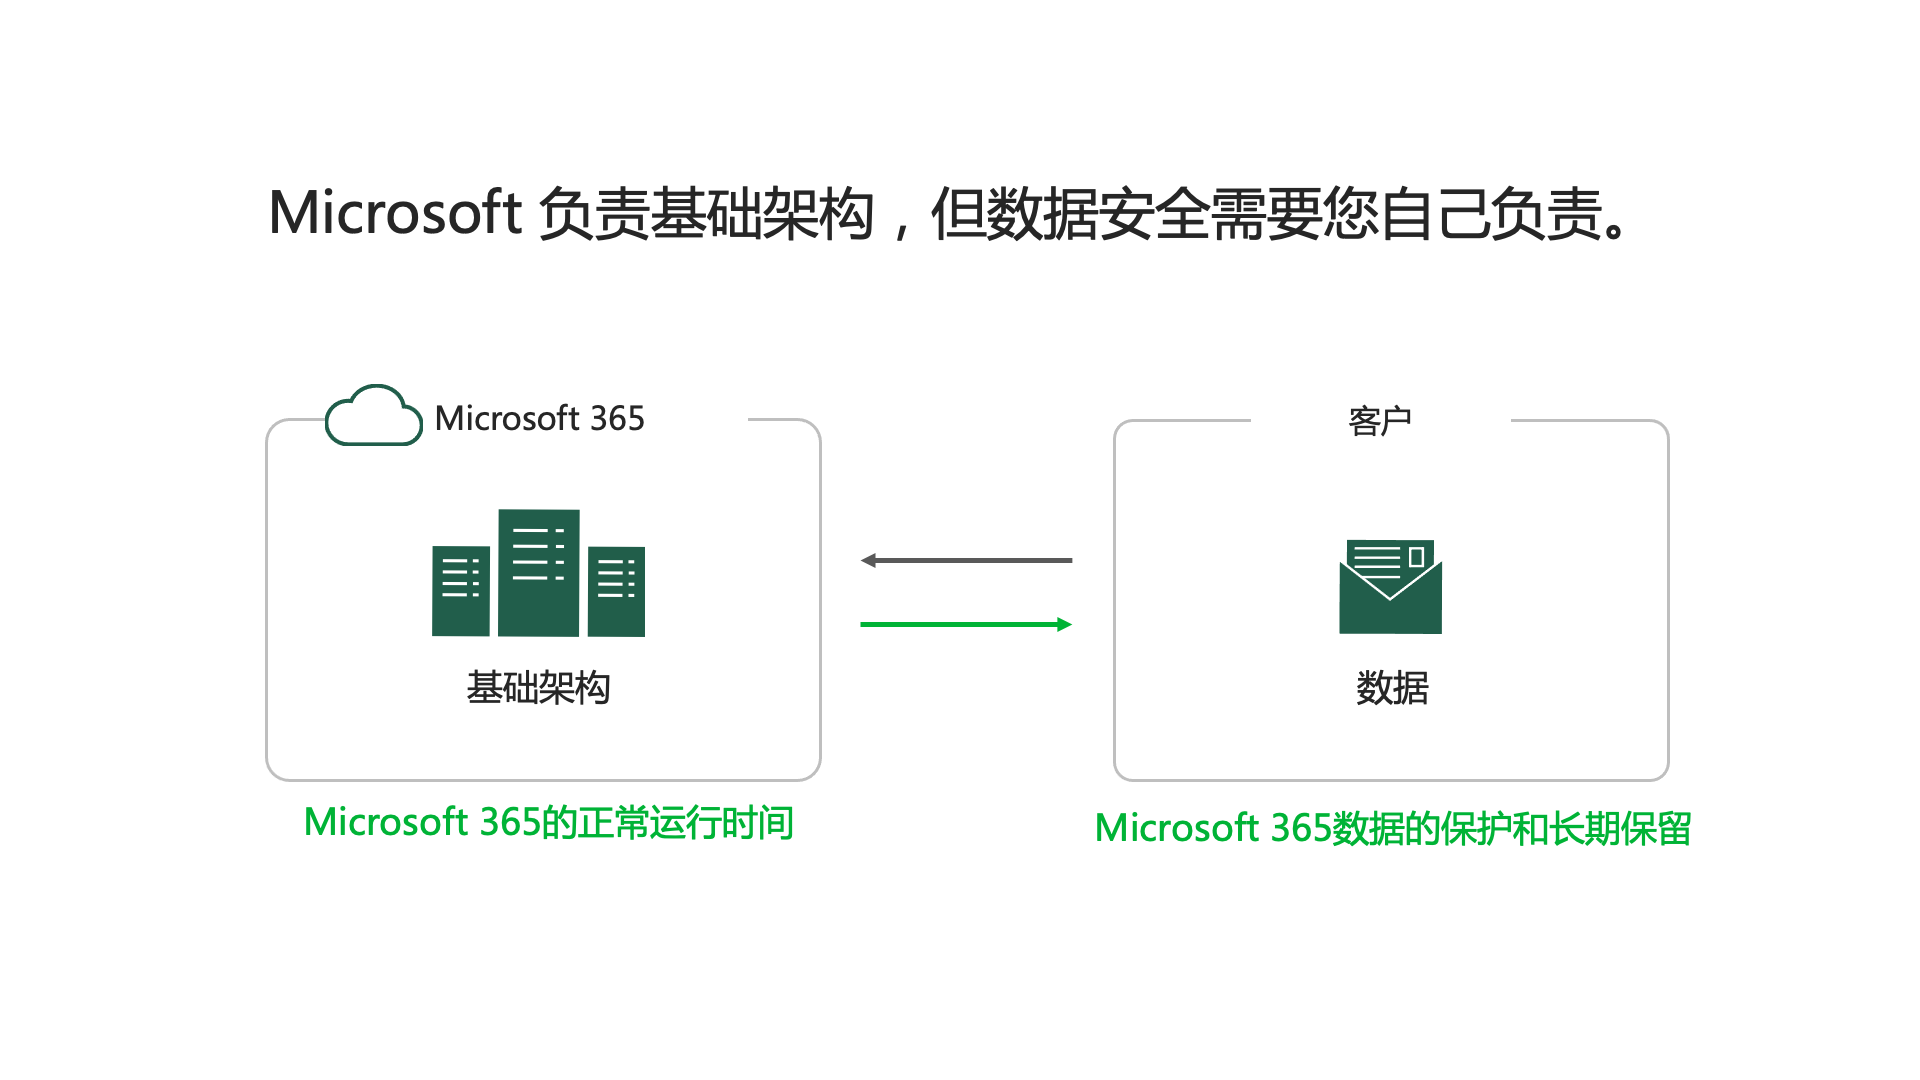 备份 Microsoft 365 图表